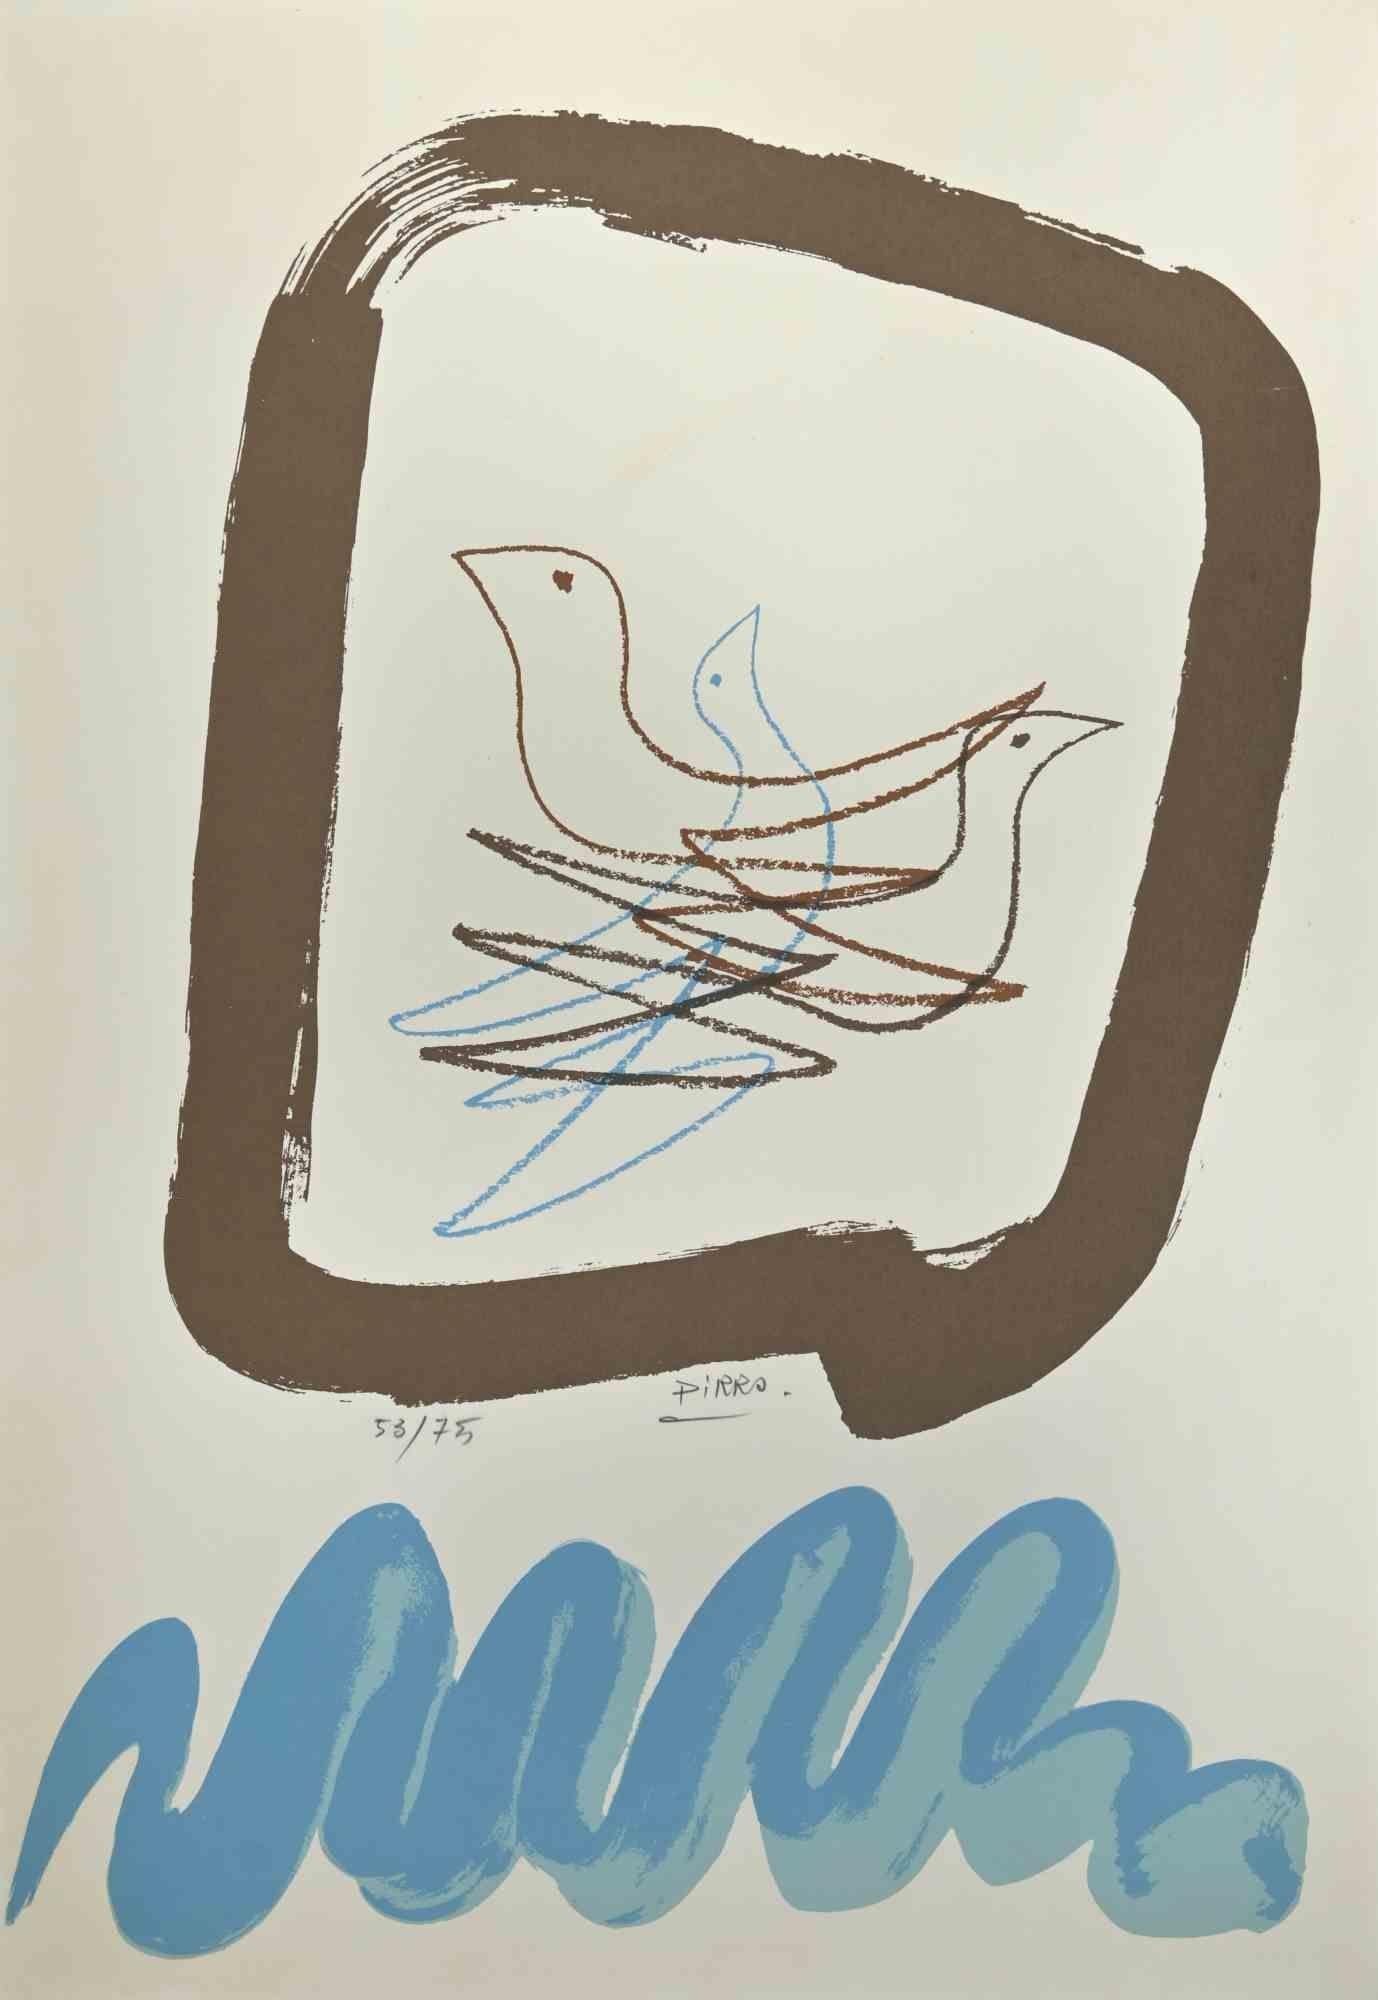 Vögel – Lithographie von Marcello Pirro – 1970er Jahre